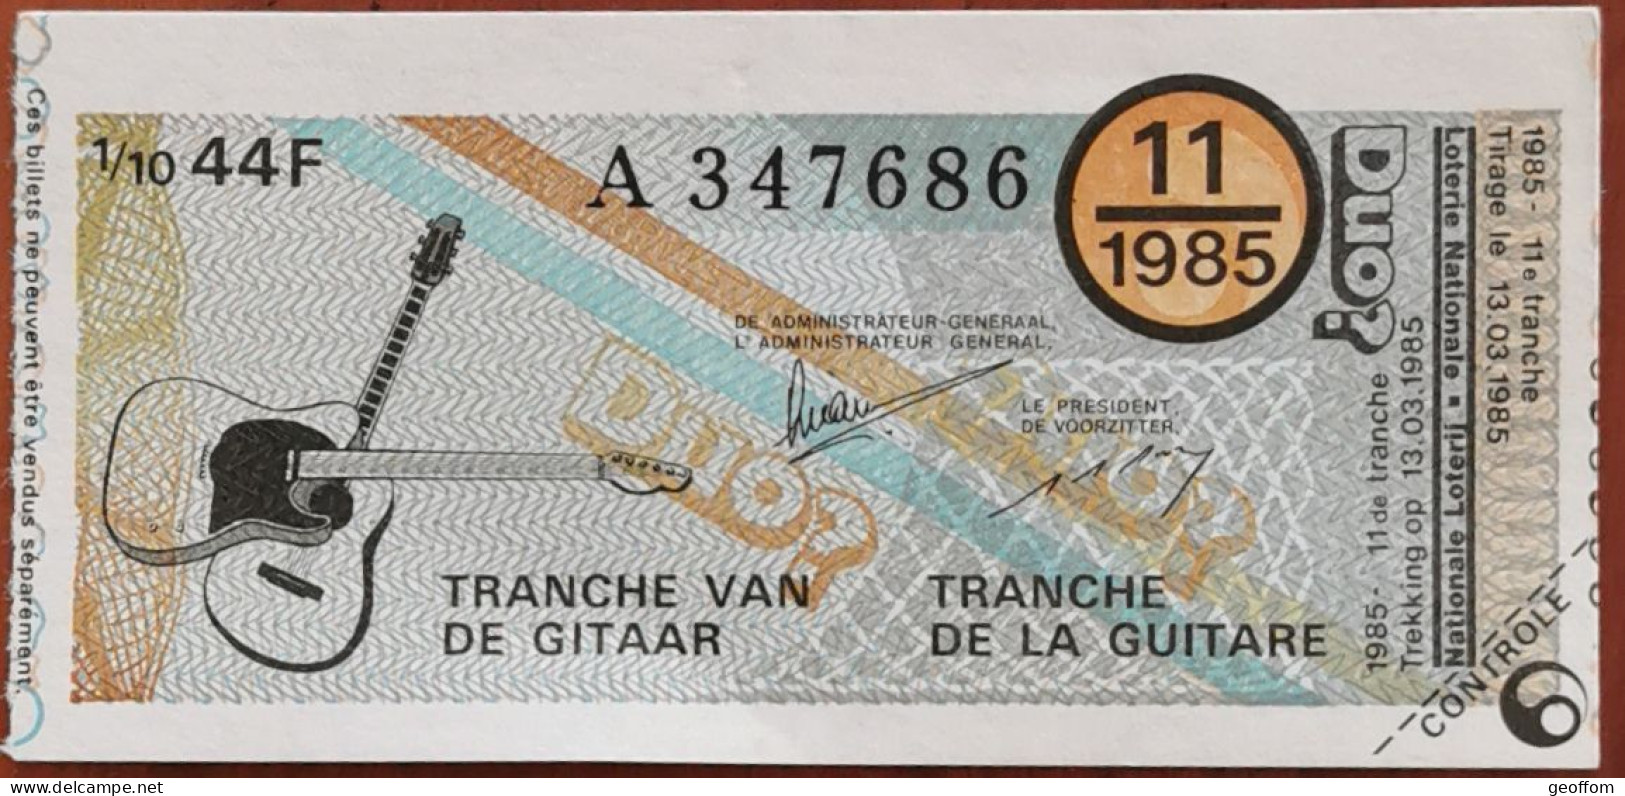 Billet De Loterie Nationale Belgique 1985 11e Tranche De La Guitare - 13-3-1985 - Billetes De Lotería